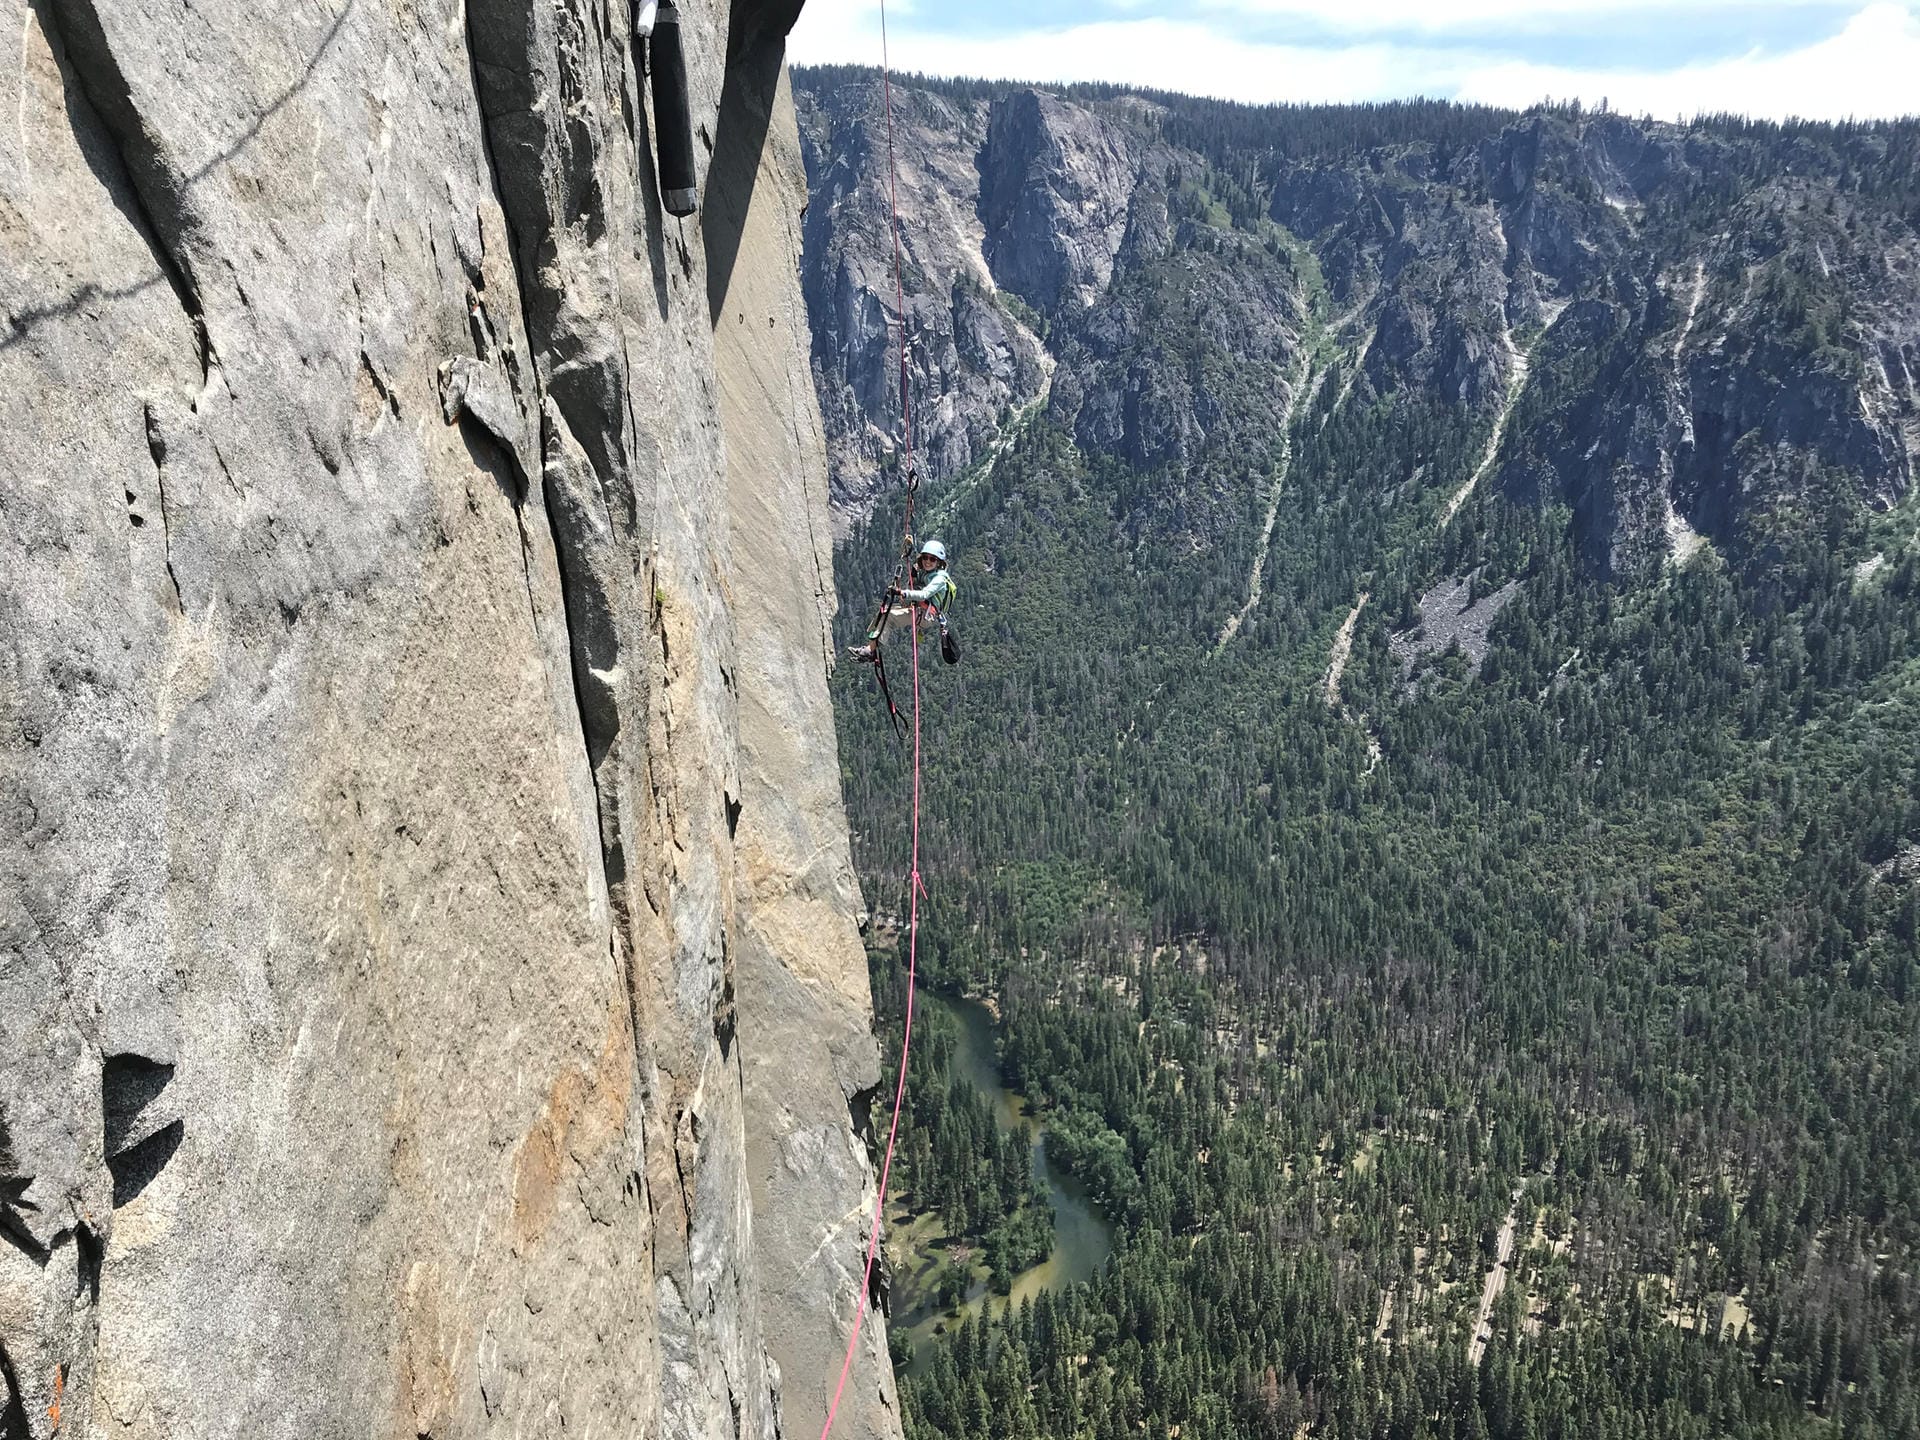 Die steilen Abhänge des Berges "El Capitan" sind lebensgefährlich. Einige Kletterer sind hier schon in den Tod gestürzt.